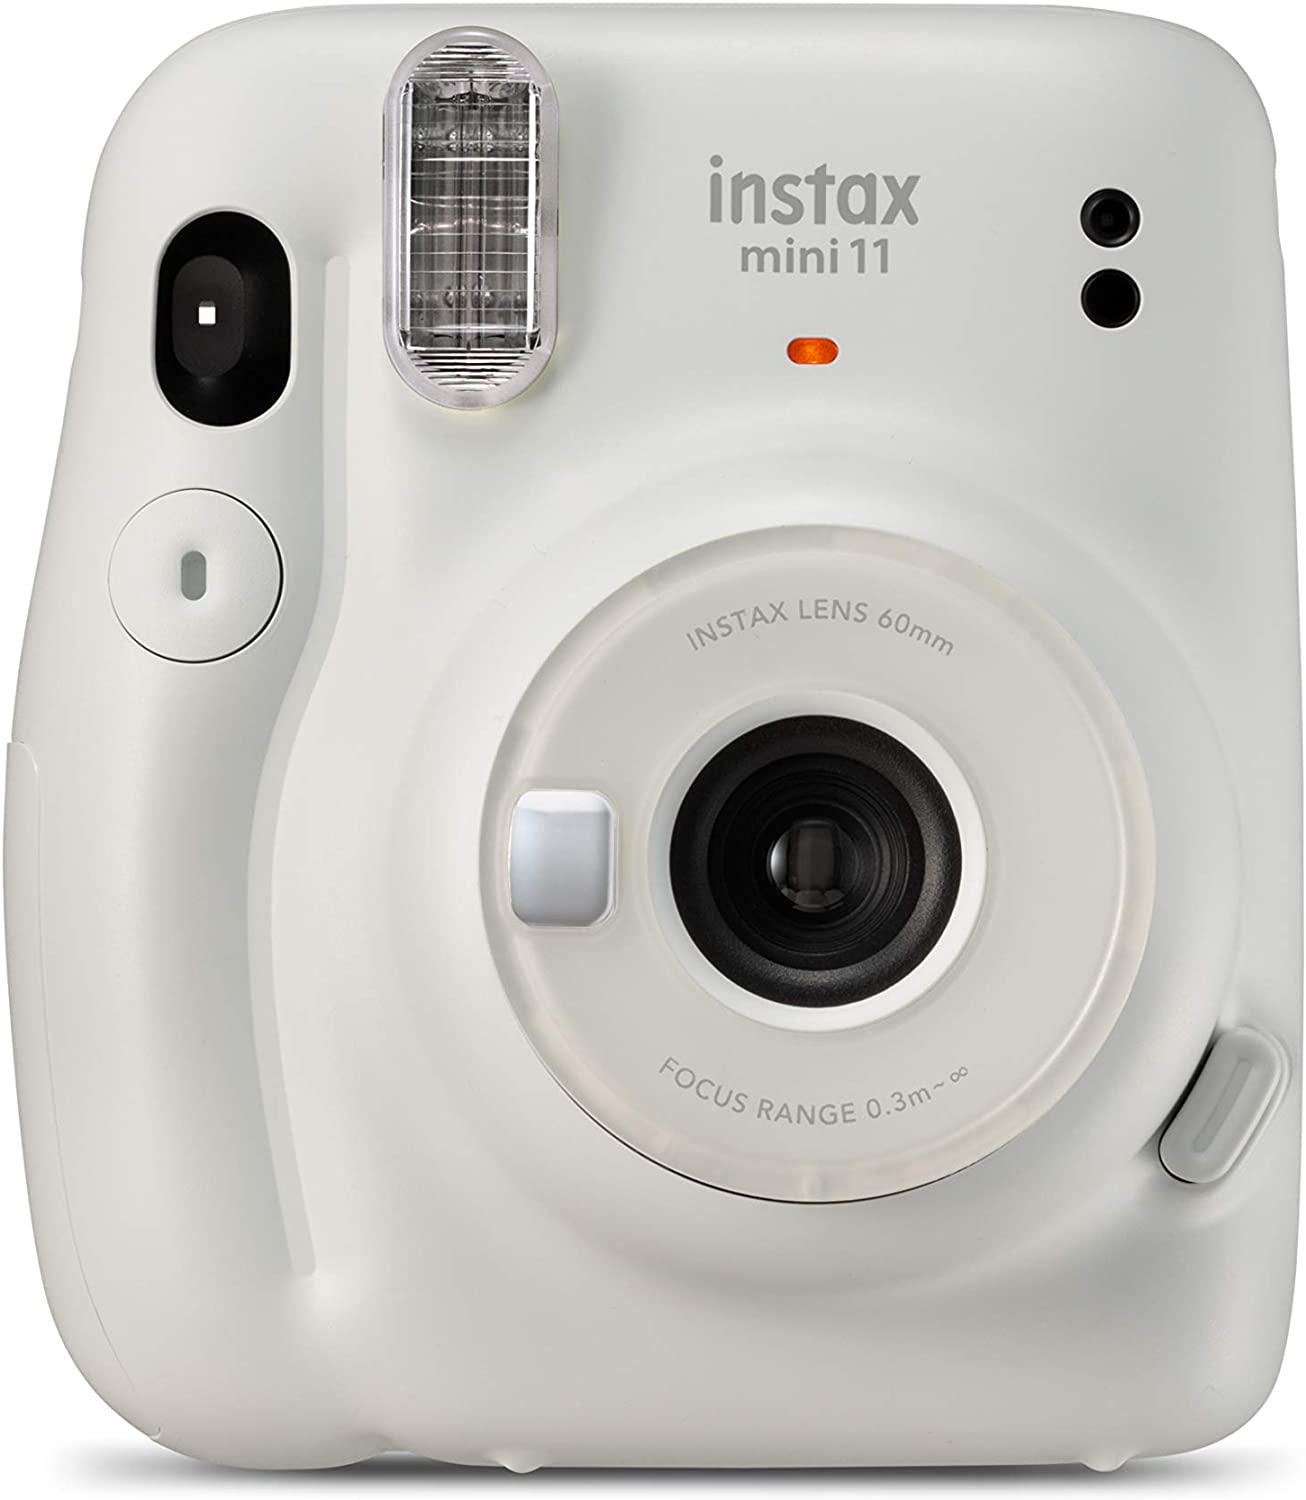 Fujifilm Instax Mini 11 Ice White Camara Instantanea - Tamaño de Imagen 62x46mm - Flash Auto - Mini Espejo para Selfies - Correa de Mano y 2 Botones de Obturador Diferentes